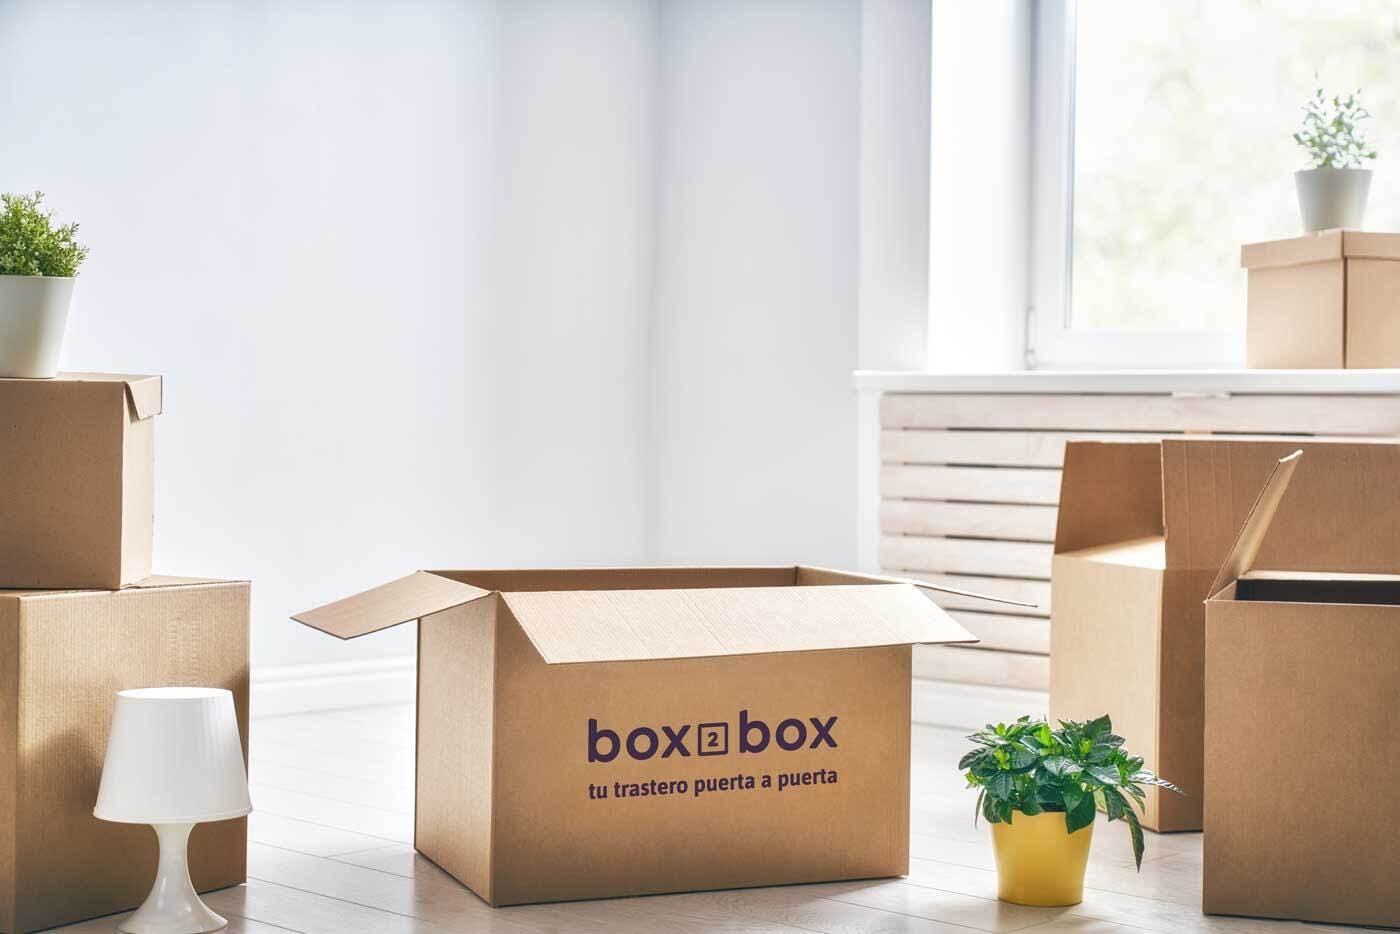 En box2box intentamos utilizar materiales sostenibles. 